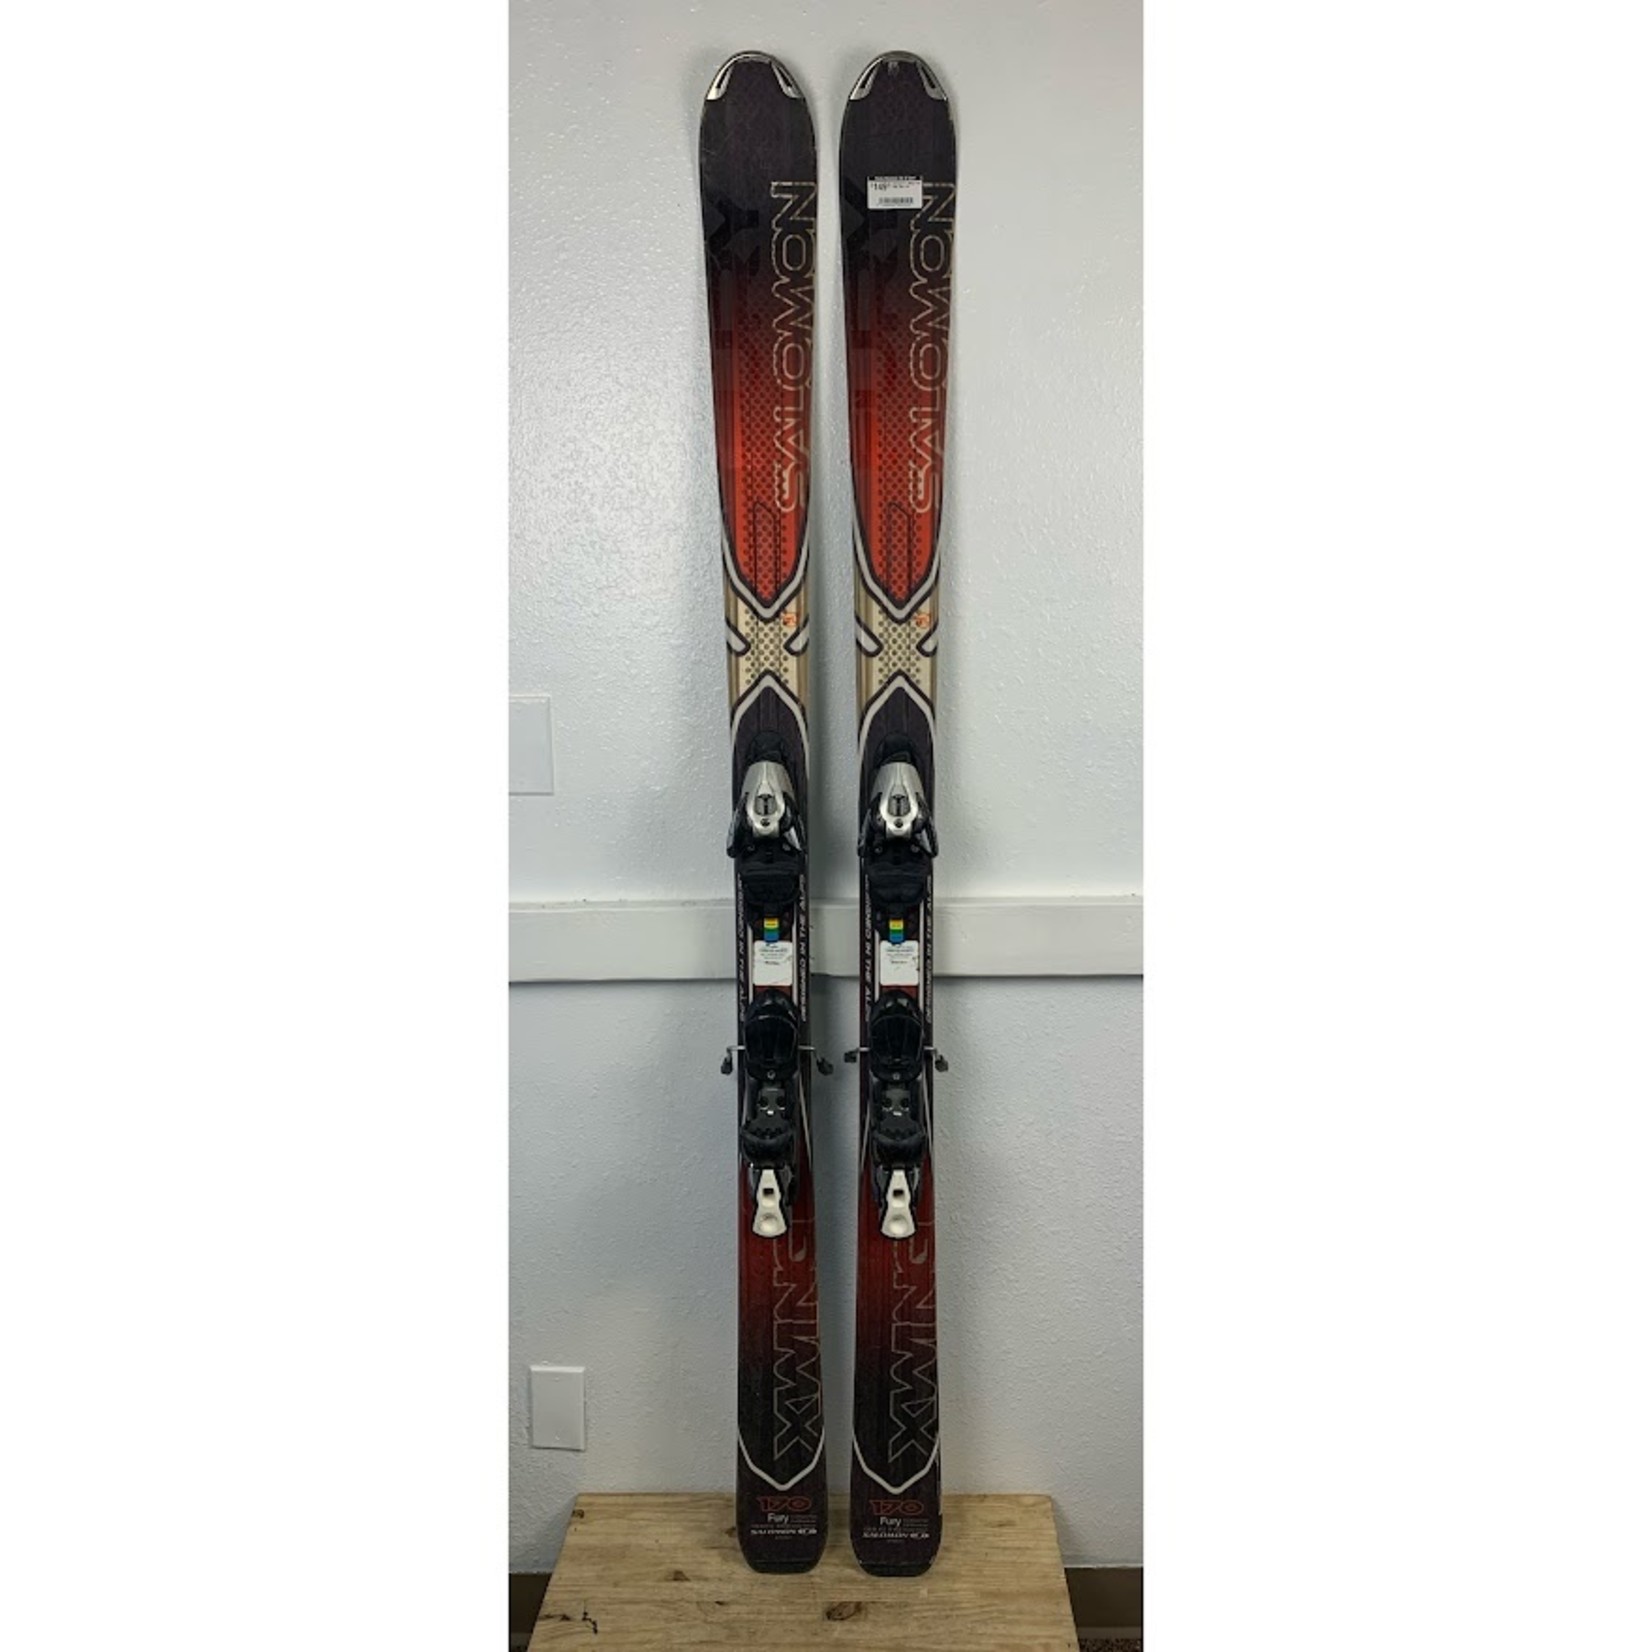 Salomon Salomon X-Wing Fury Skis, Size 170